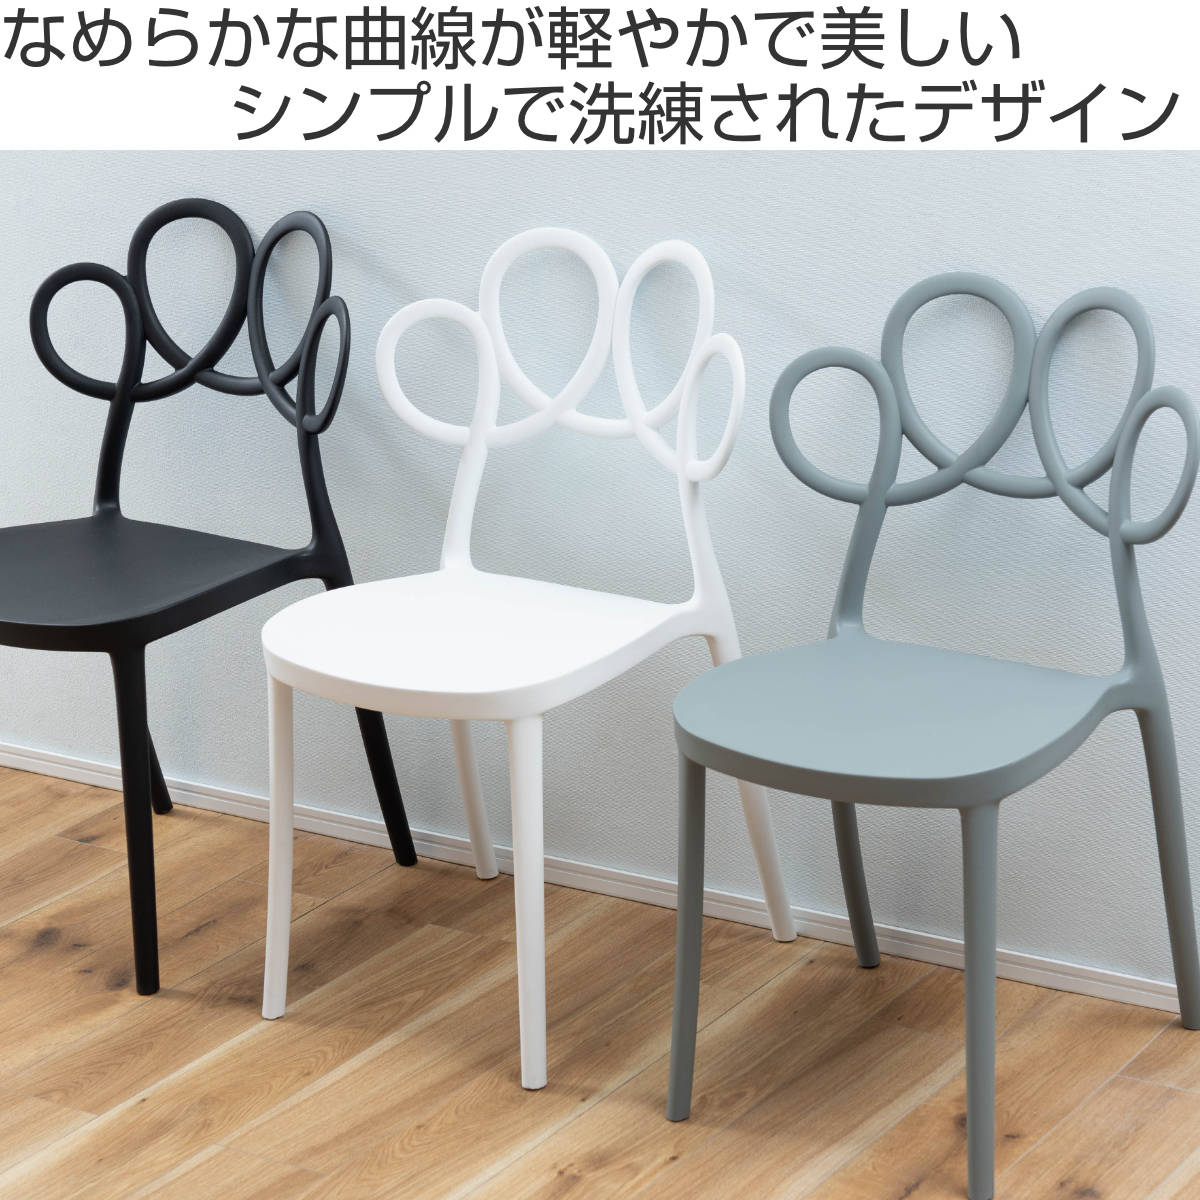  стул сиденье высота 44.5cm поли Pro pi Len старт  King ( обеденный стол стул стул living стул пластик )